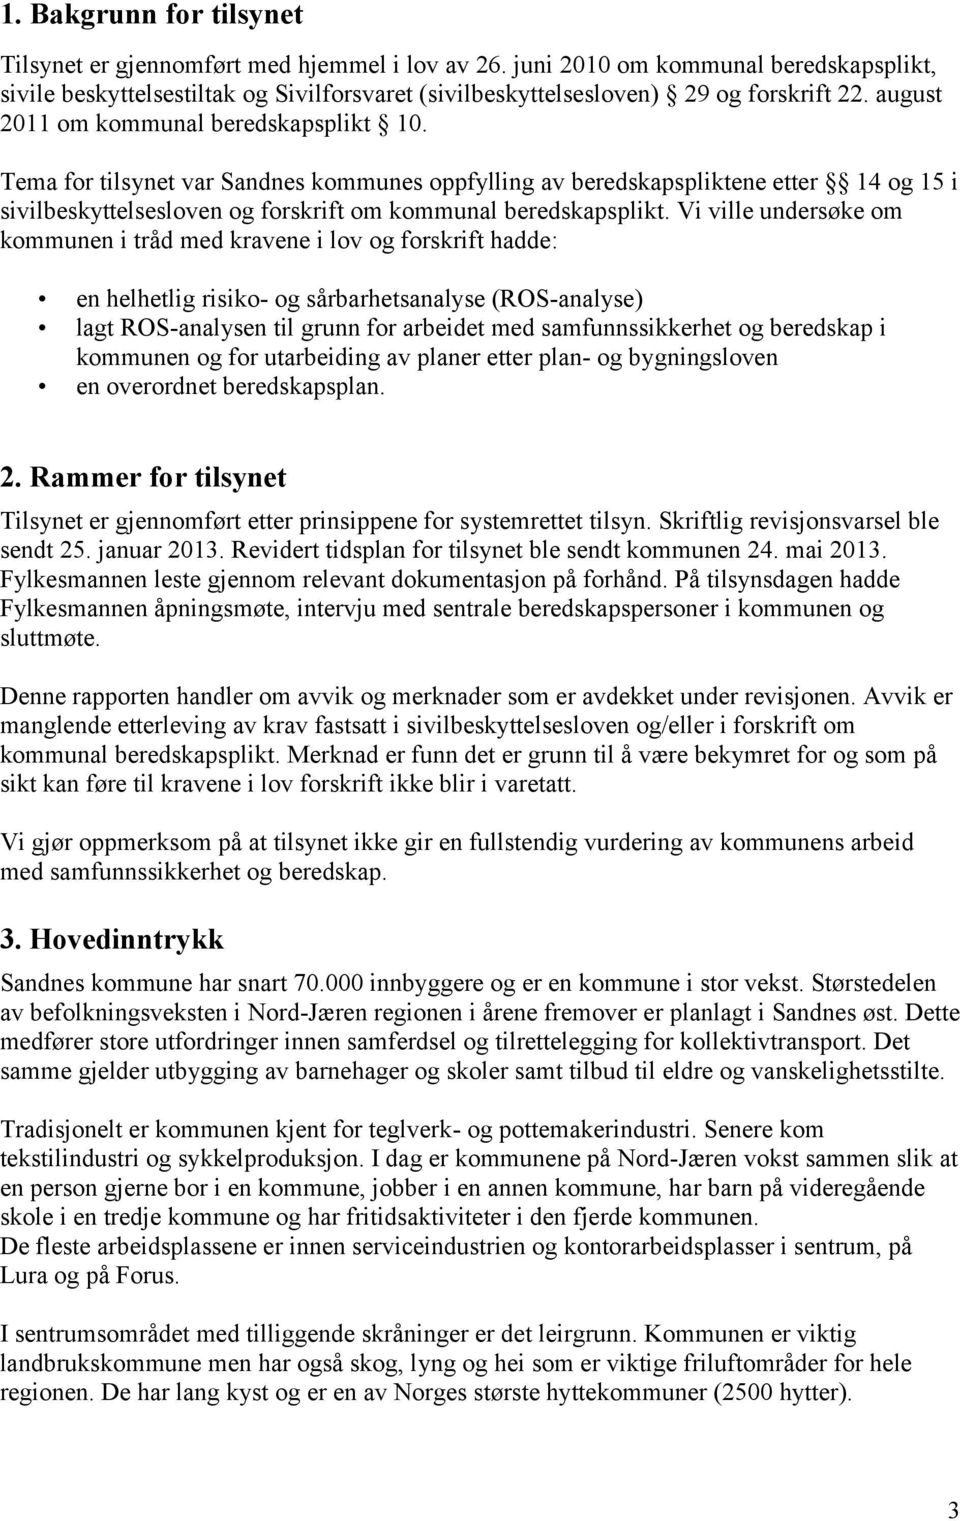 Tema for tilsynet var Sandnes kommunes oppfylling av beredskapspliktene etter 14 og 15 i sivilbeskyttelsesloven og forskrift om kommunal beredskapsplikt.